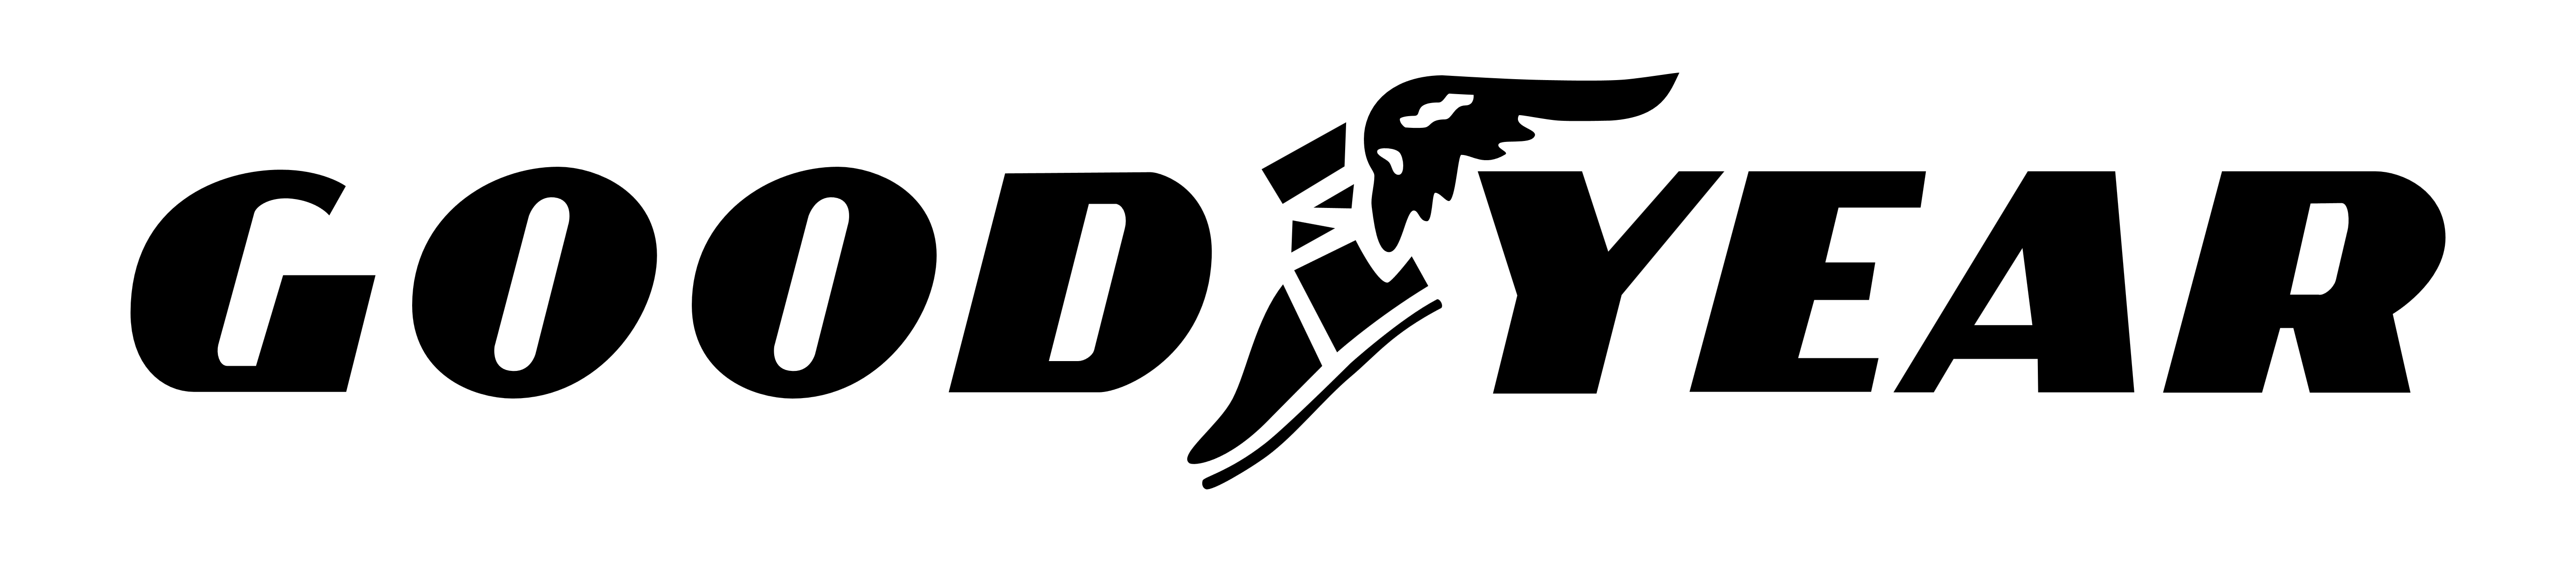 Производитель Goodyear логотип